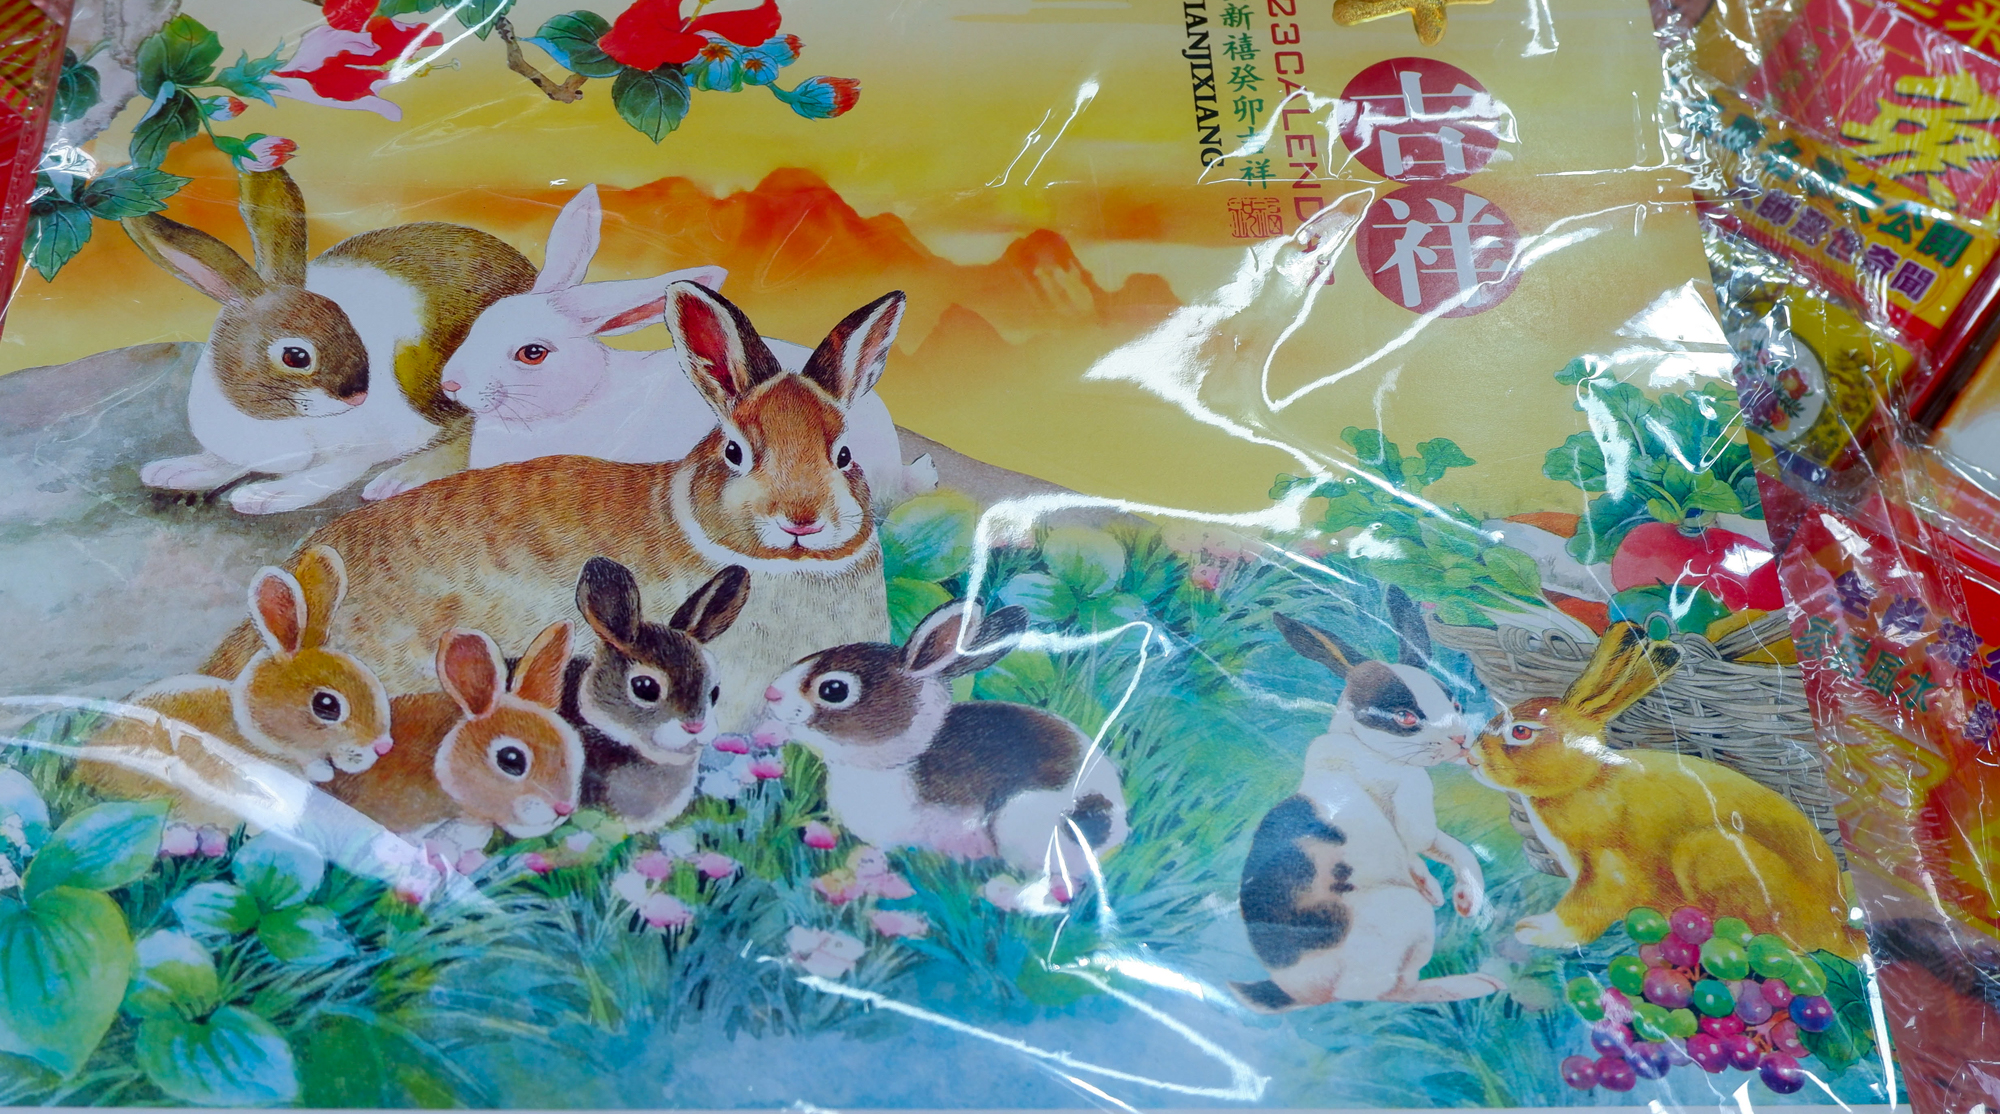 Độc đáo hình ảnh con thỏ trong chợ Tết người Hoa ở TP.HCM  - Ảnh 5.